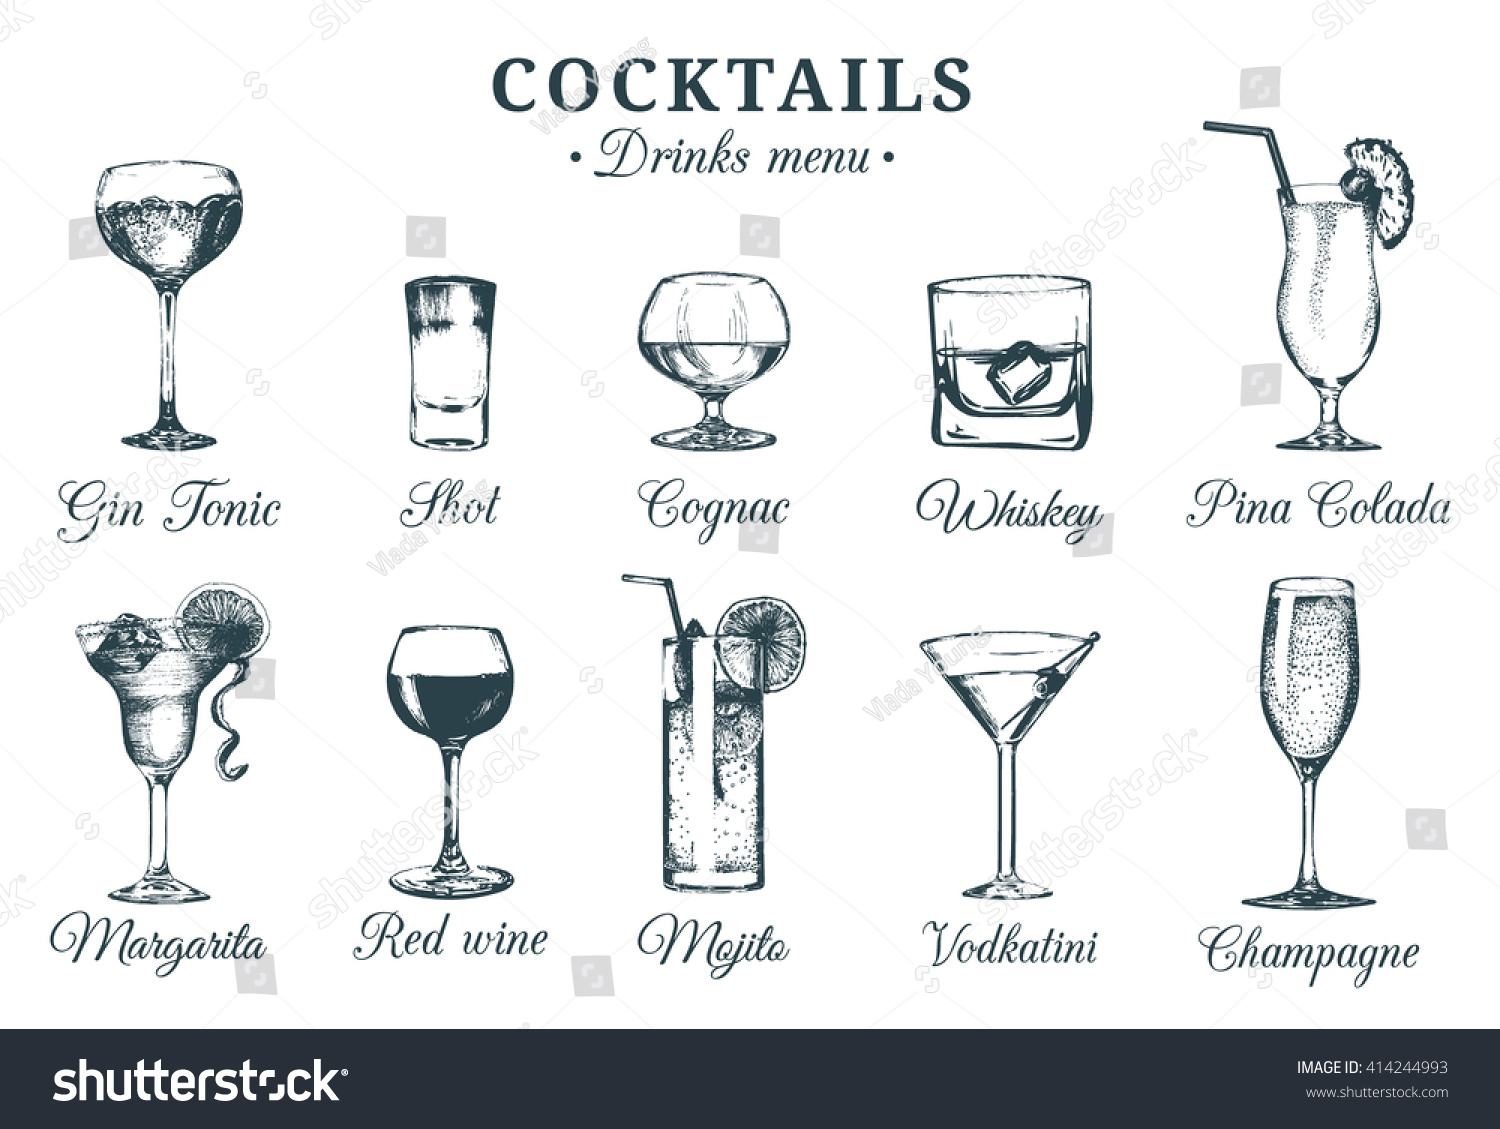 Эскиз бокалов для разного алкоголя